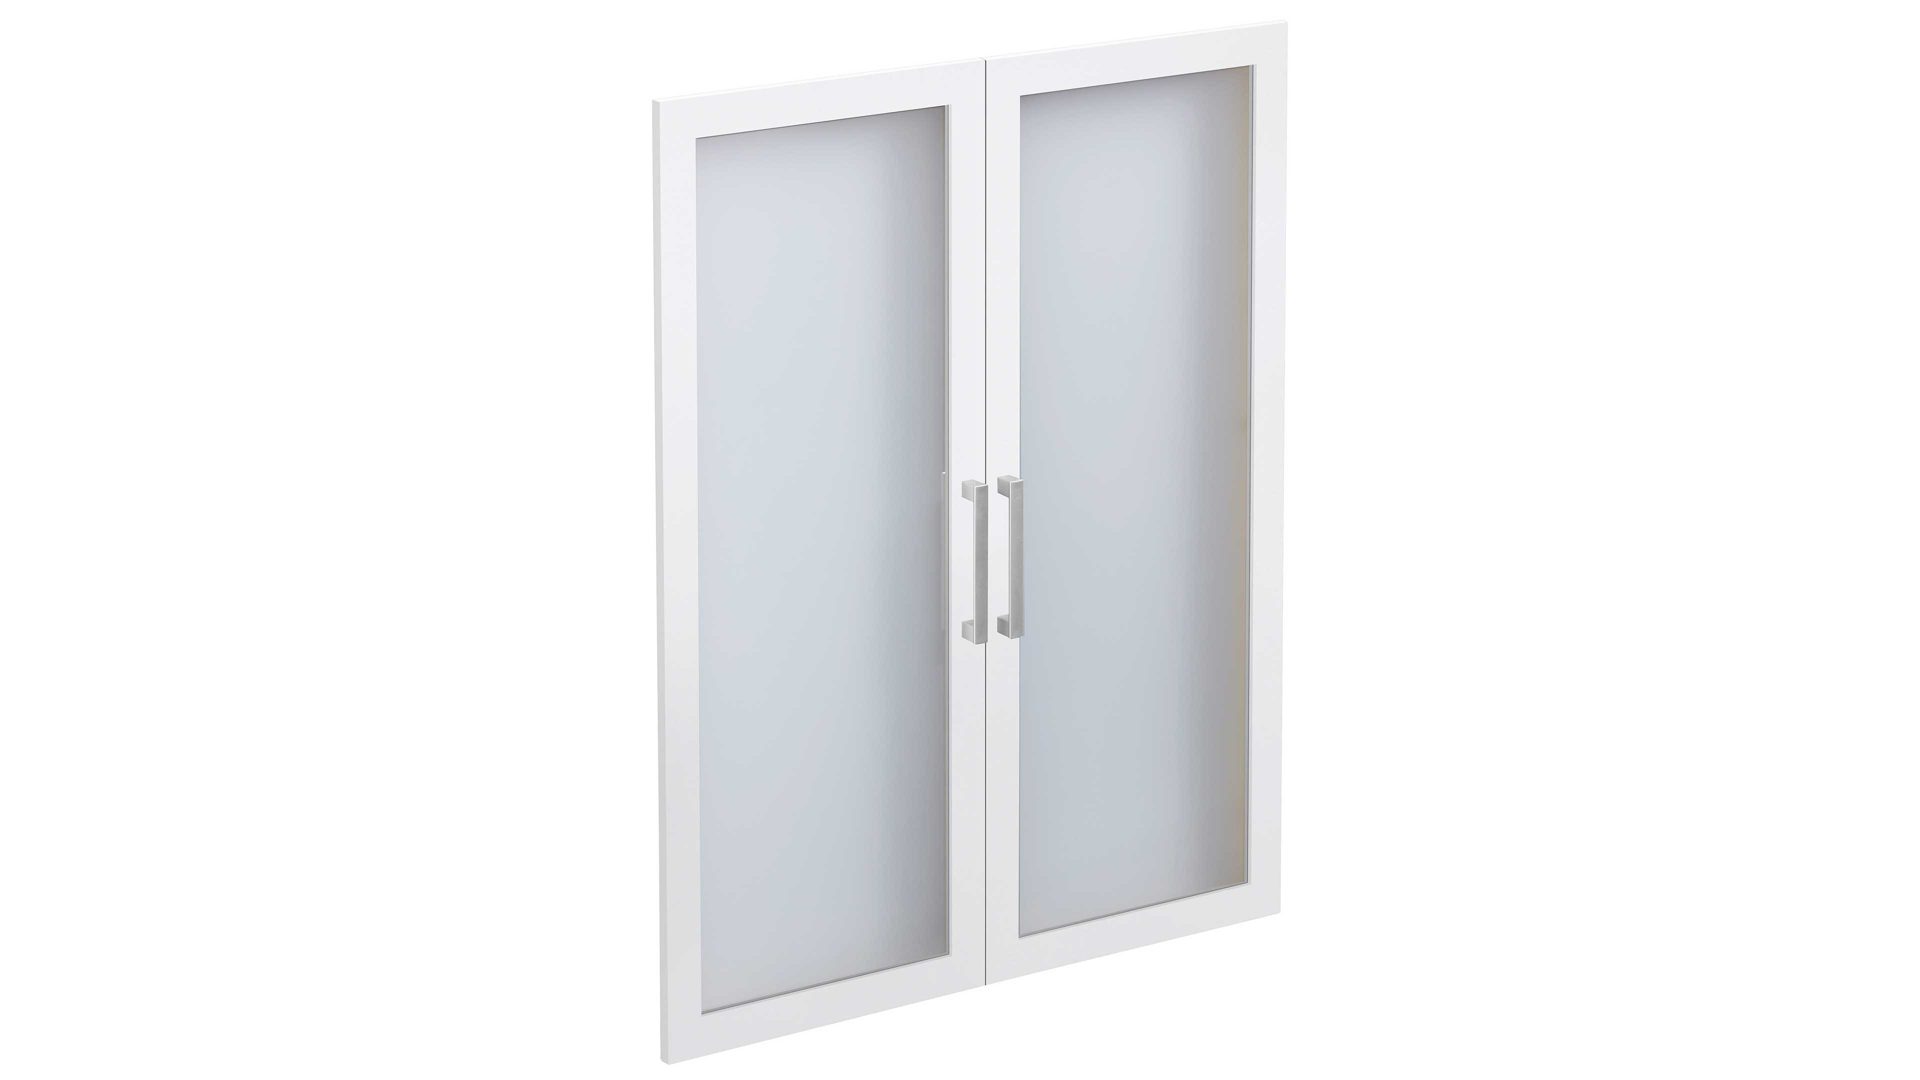 Türen-Set Fmd furniture aus Glas in Weiß Glastüren-Set Calvia 12 Brillantweiß – zwei Türen